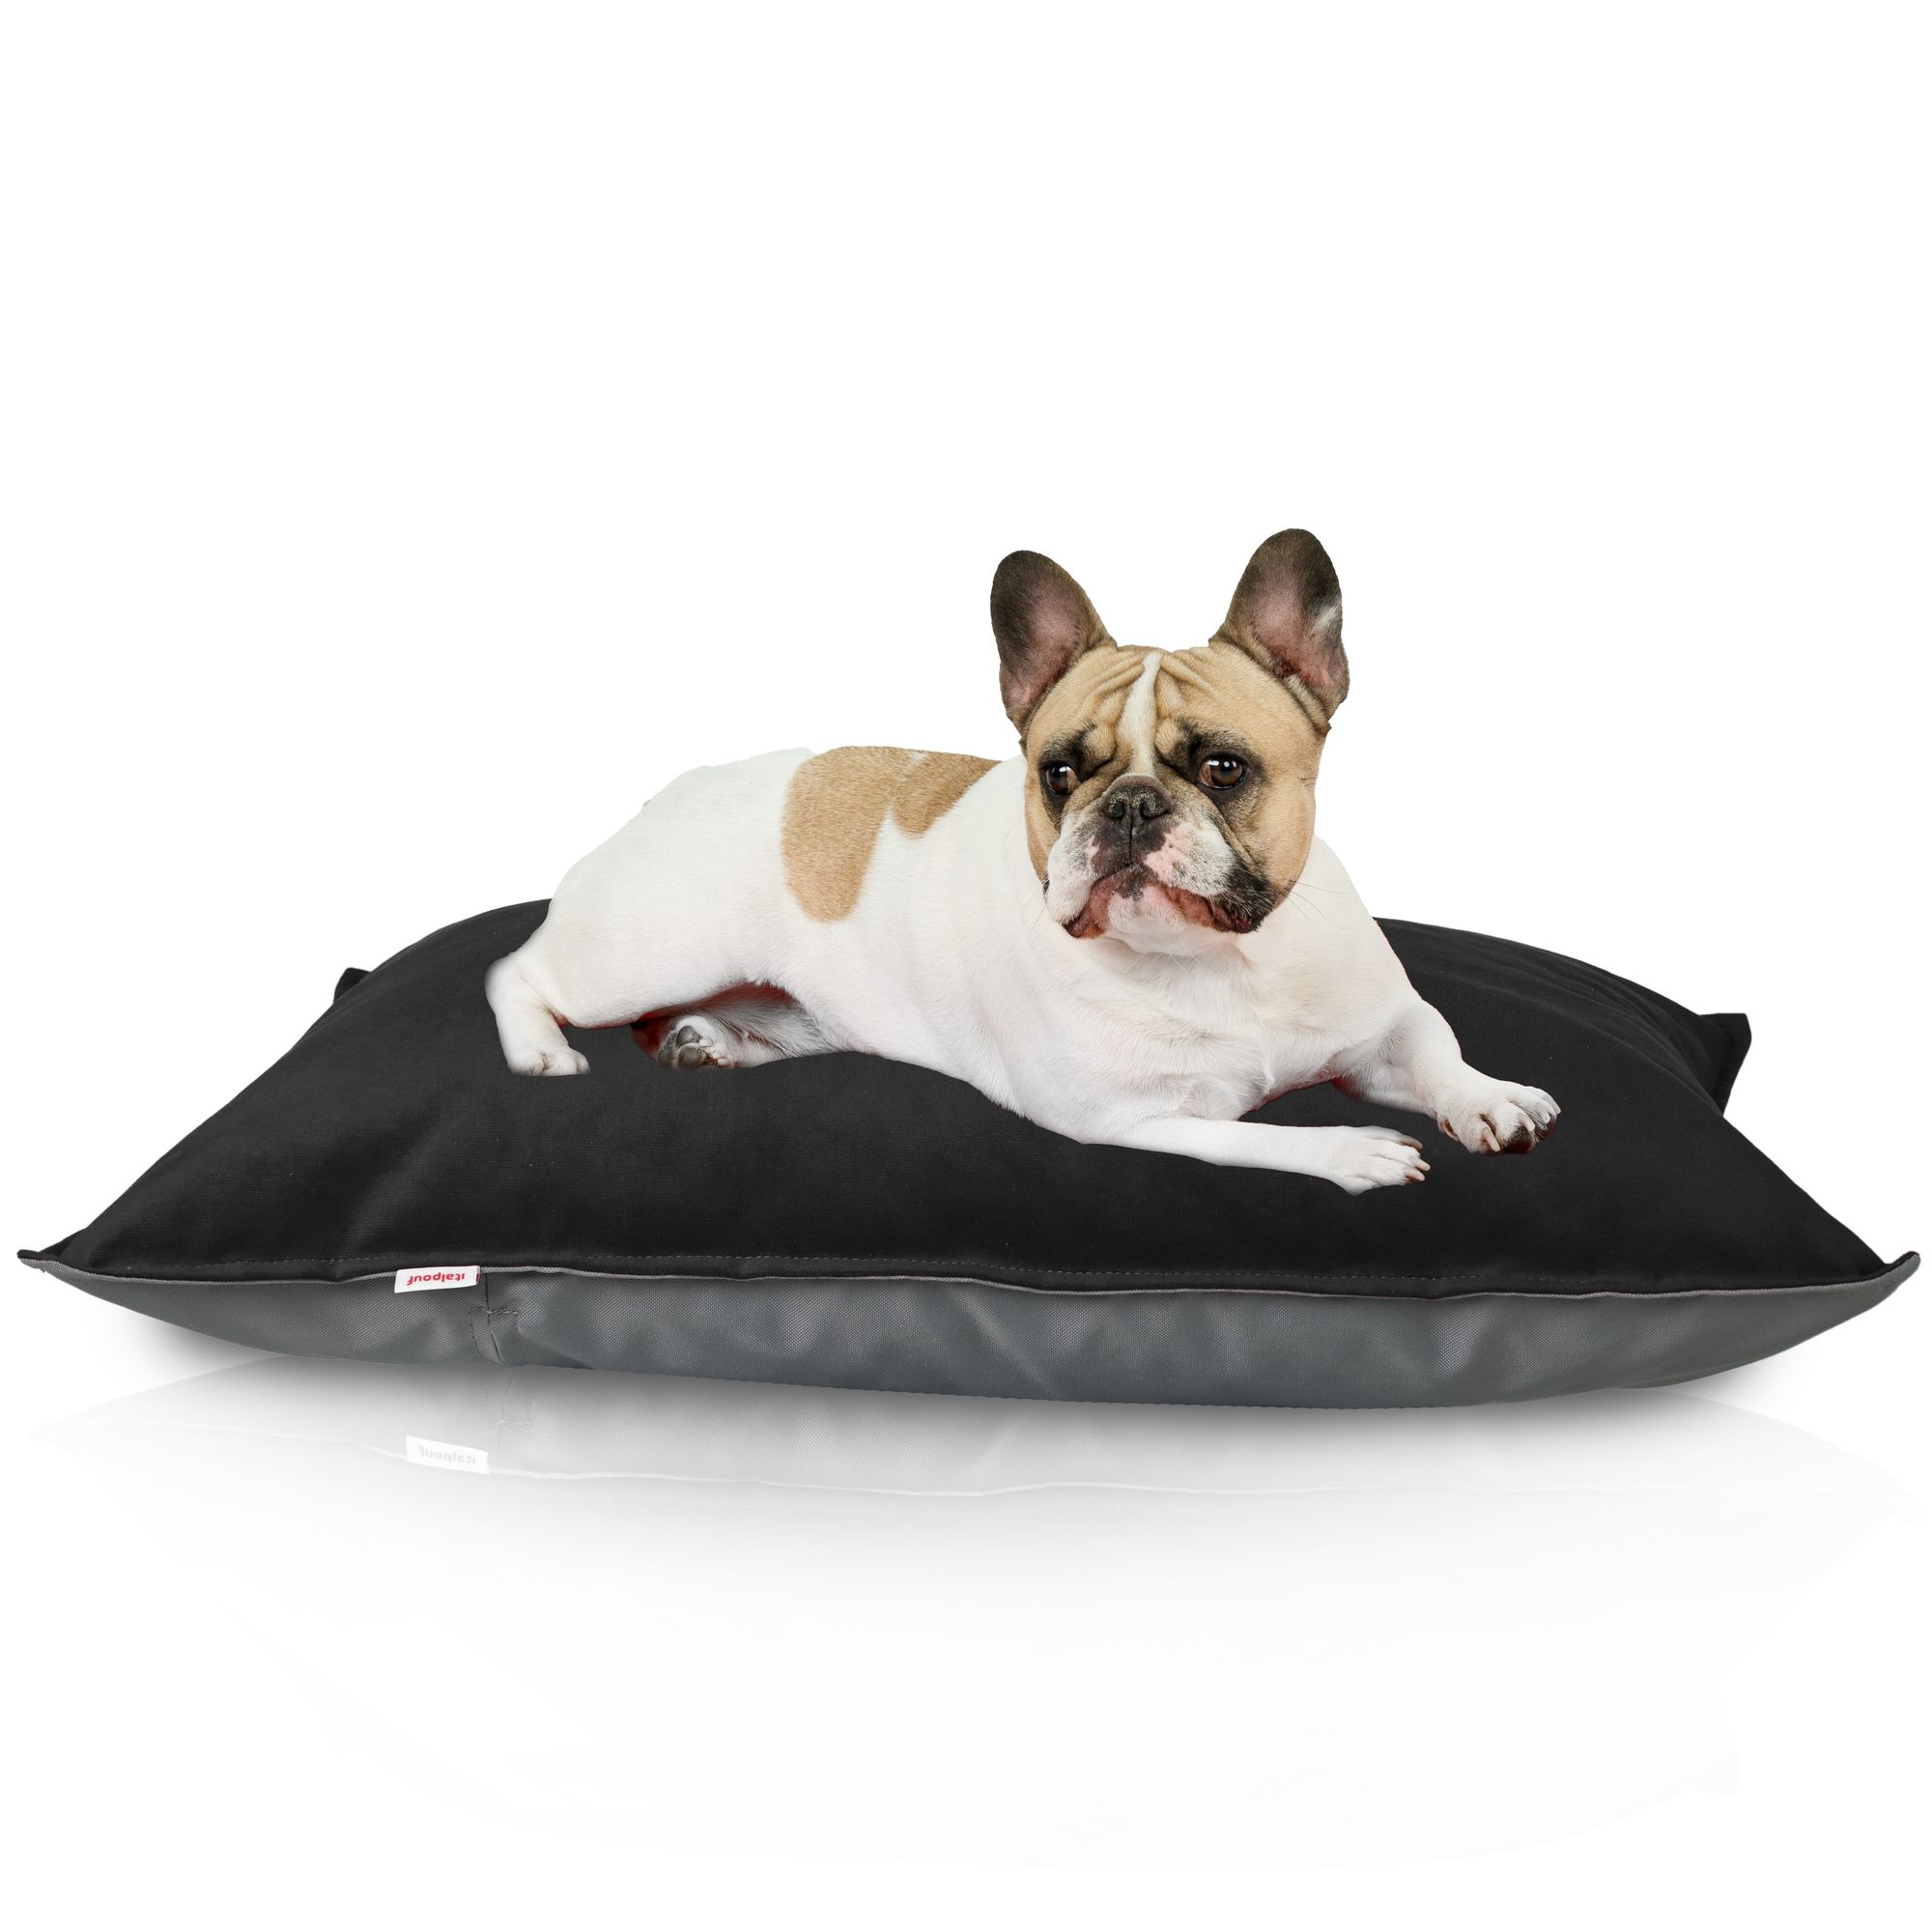 Cuscino materasso per cane. Lettino per gatti in colore nero morbido